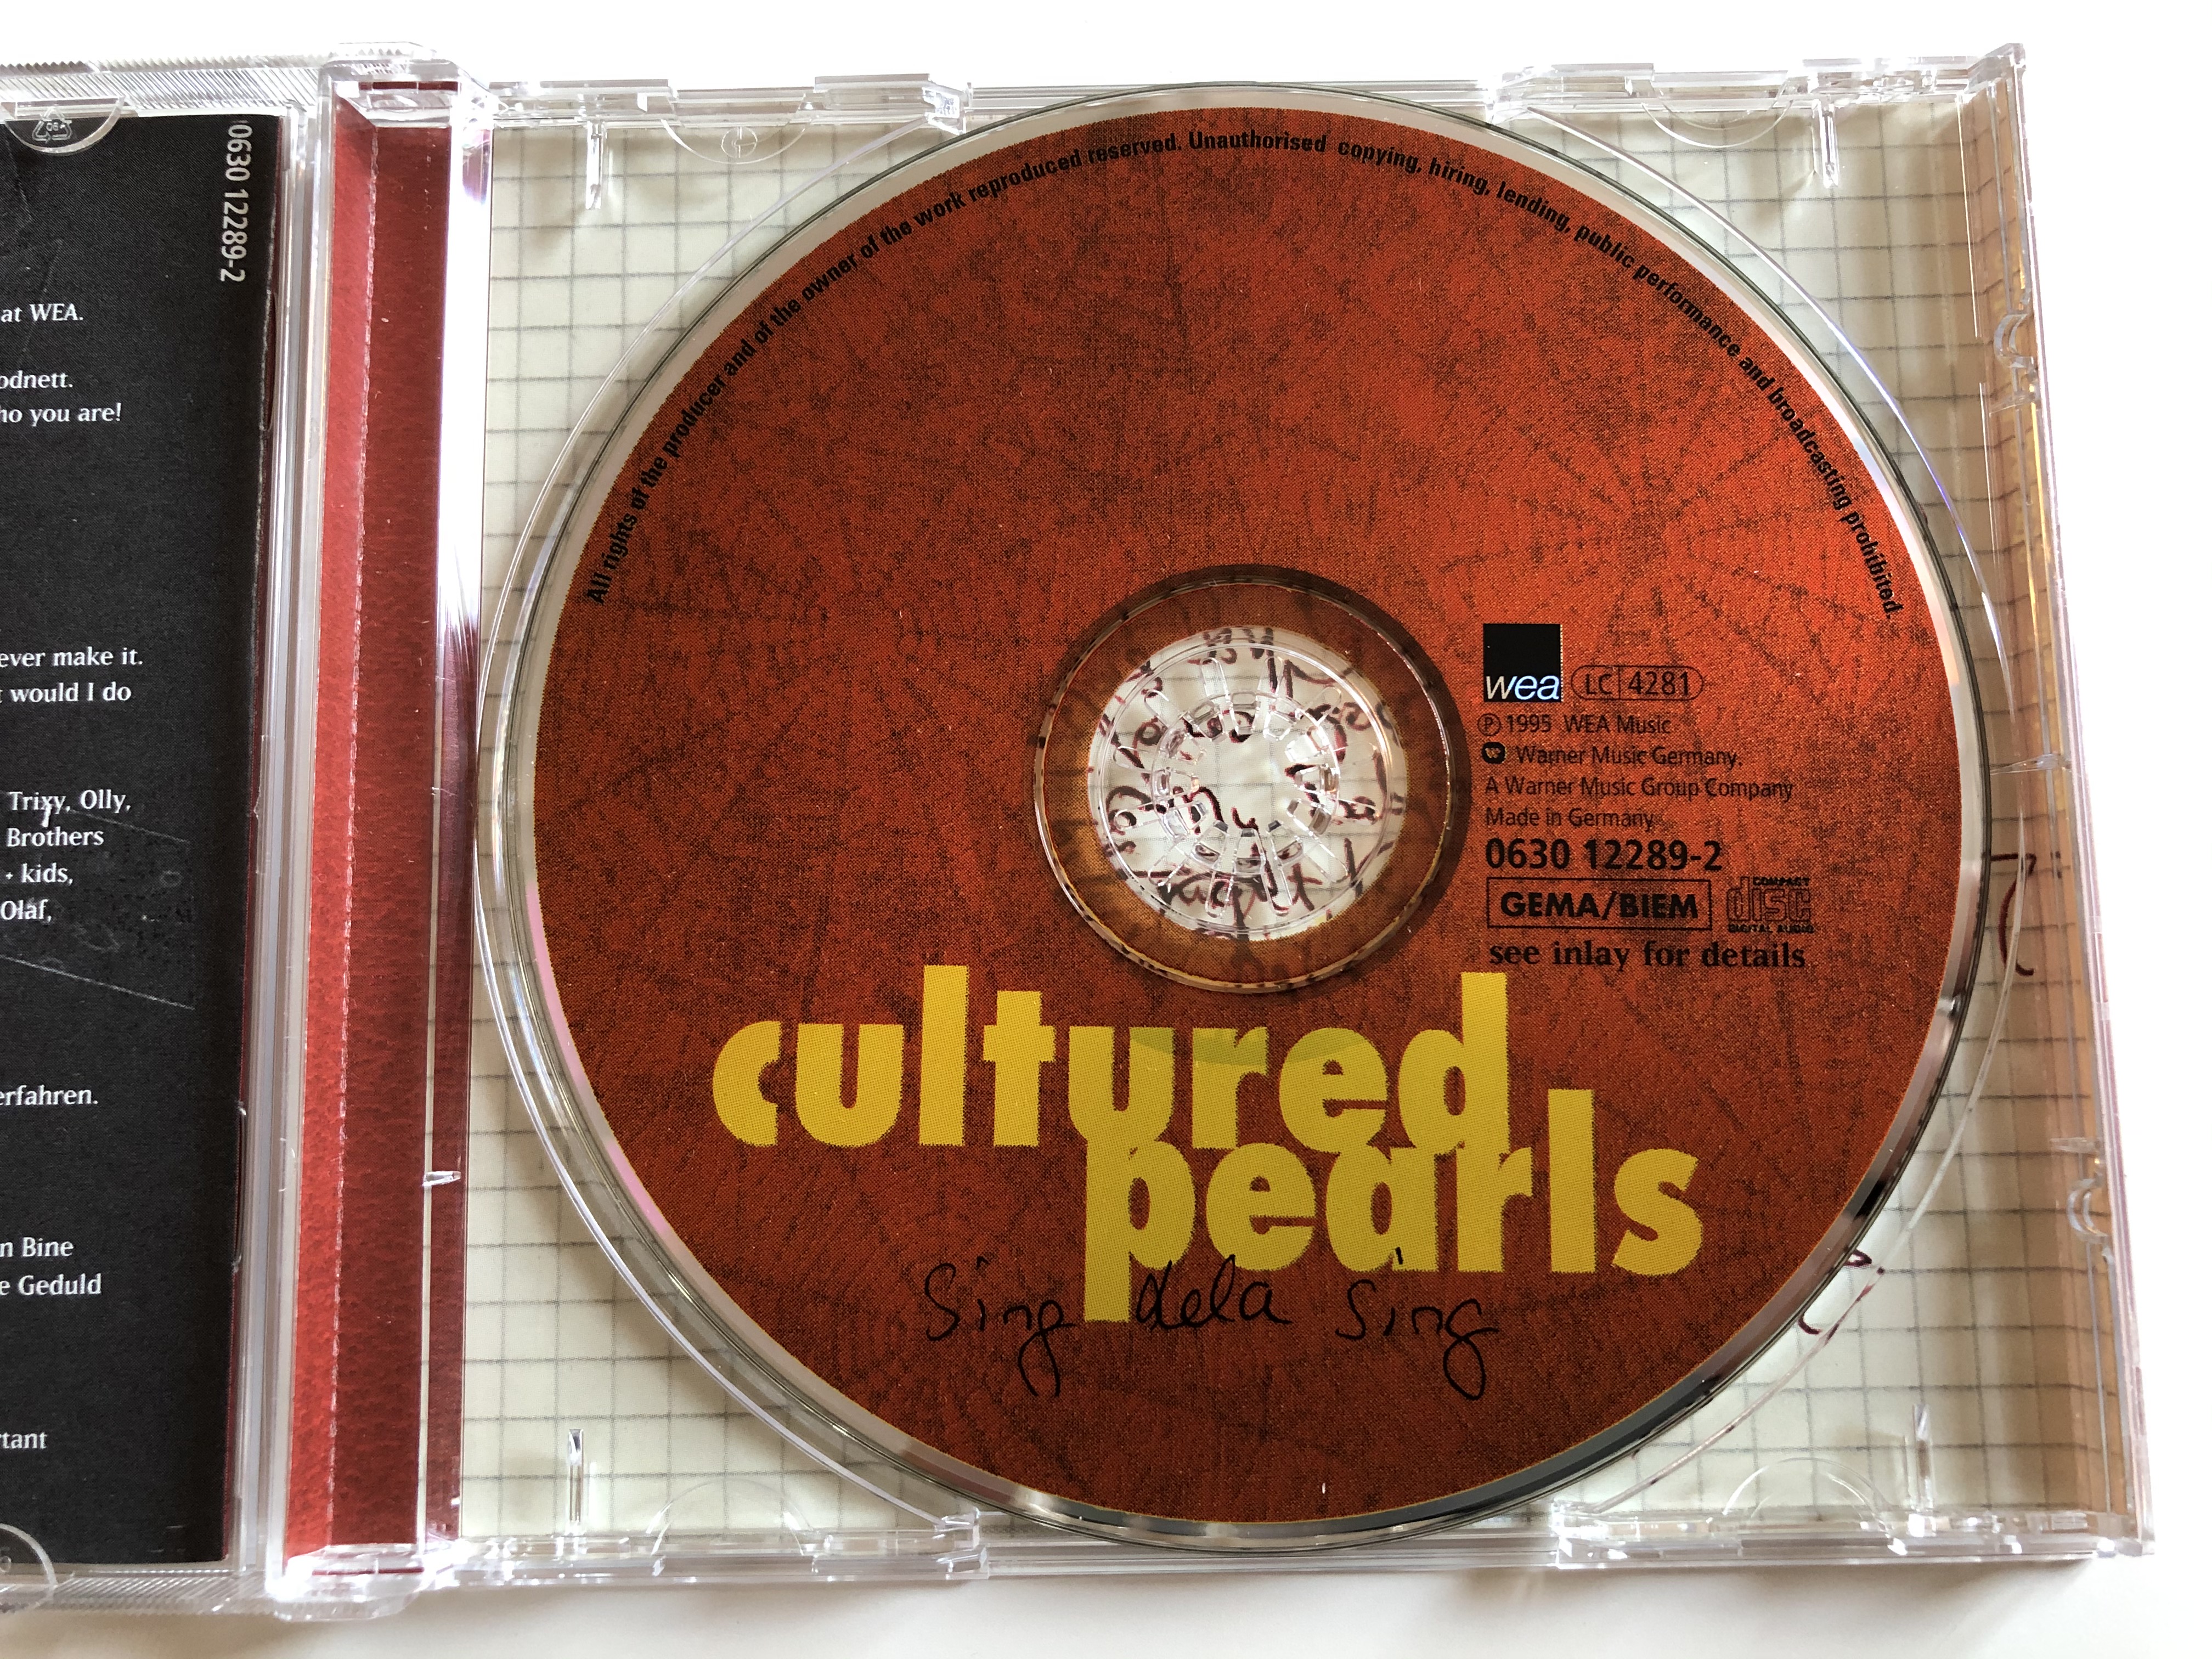 cultured-pearls-sing-dela-sing-wea-audio-cd-1995-0630-12289-2-6-.jpg